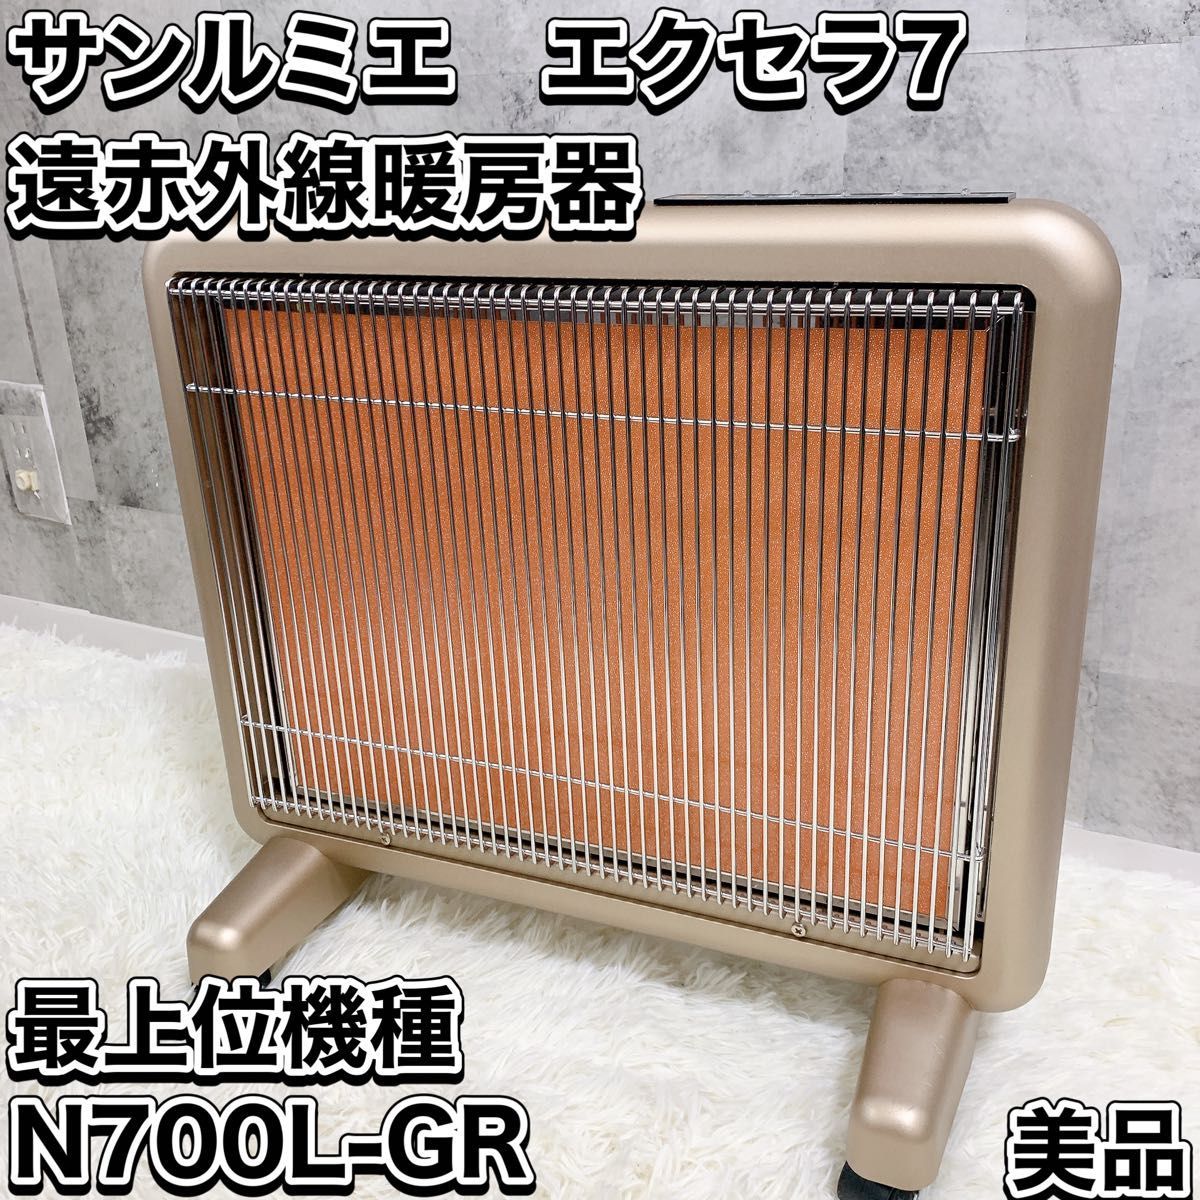 サンルミエ キュート E800LS 遠赤外線暖房器 家電 N727 - 空調